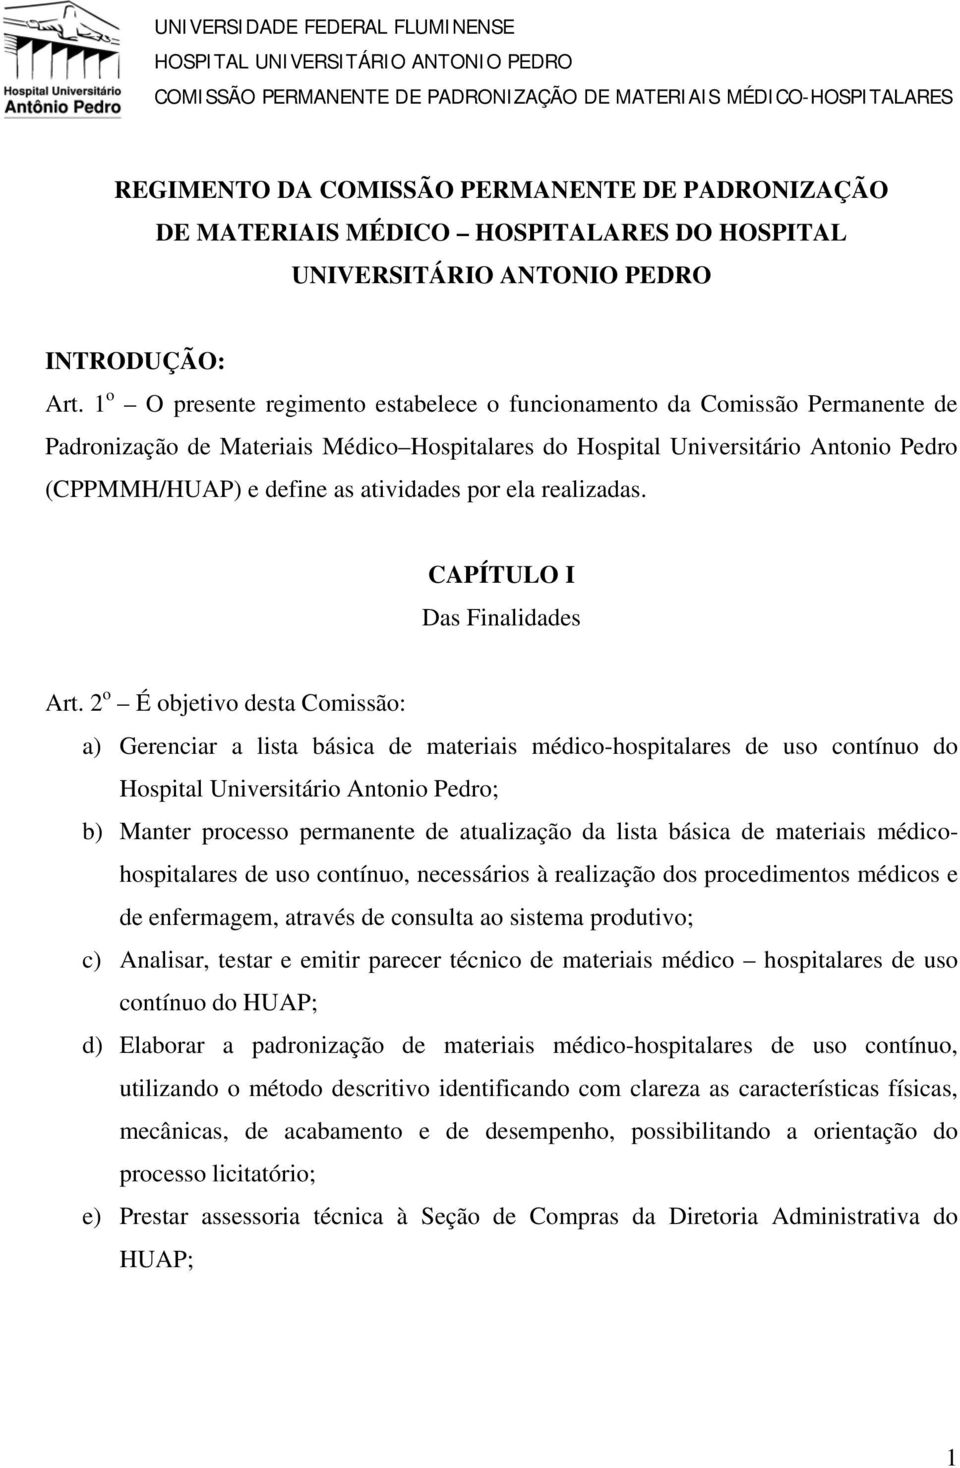 1 o O presente regimento estabelece o funcionamento da Comissão Permanente de Padronização de Materiais Médico Hospitalares do Hospital Universitário Antonio Pedro (CPPMMH/HUAP) e define as